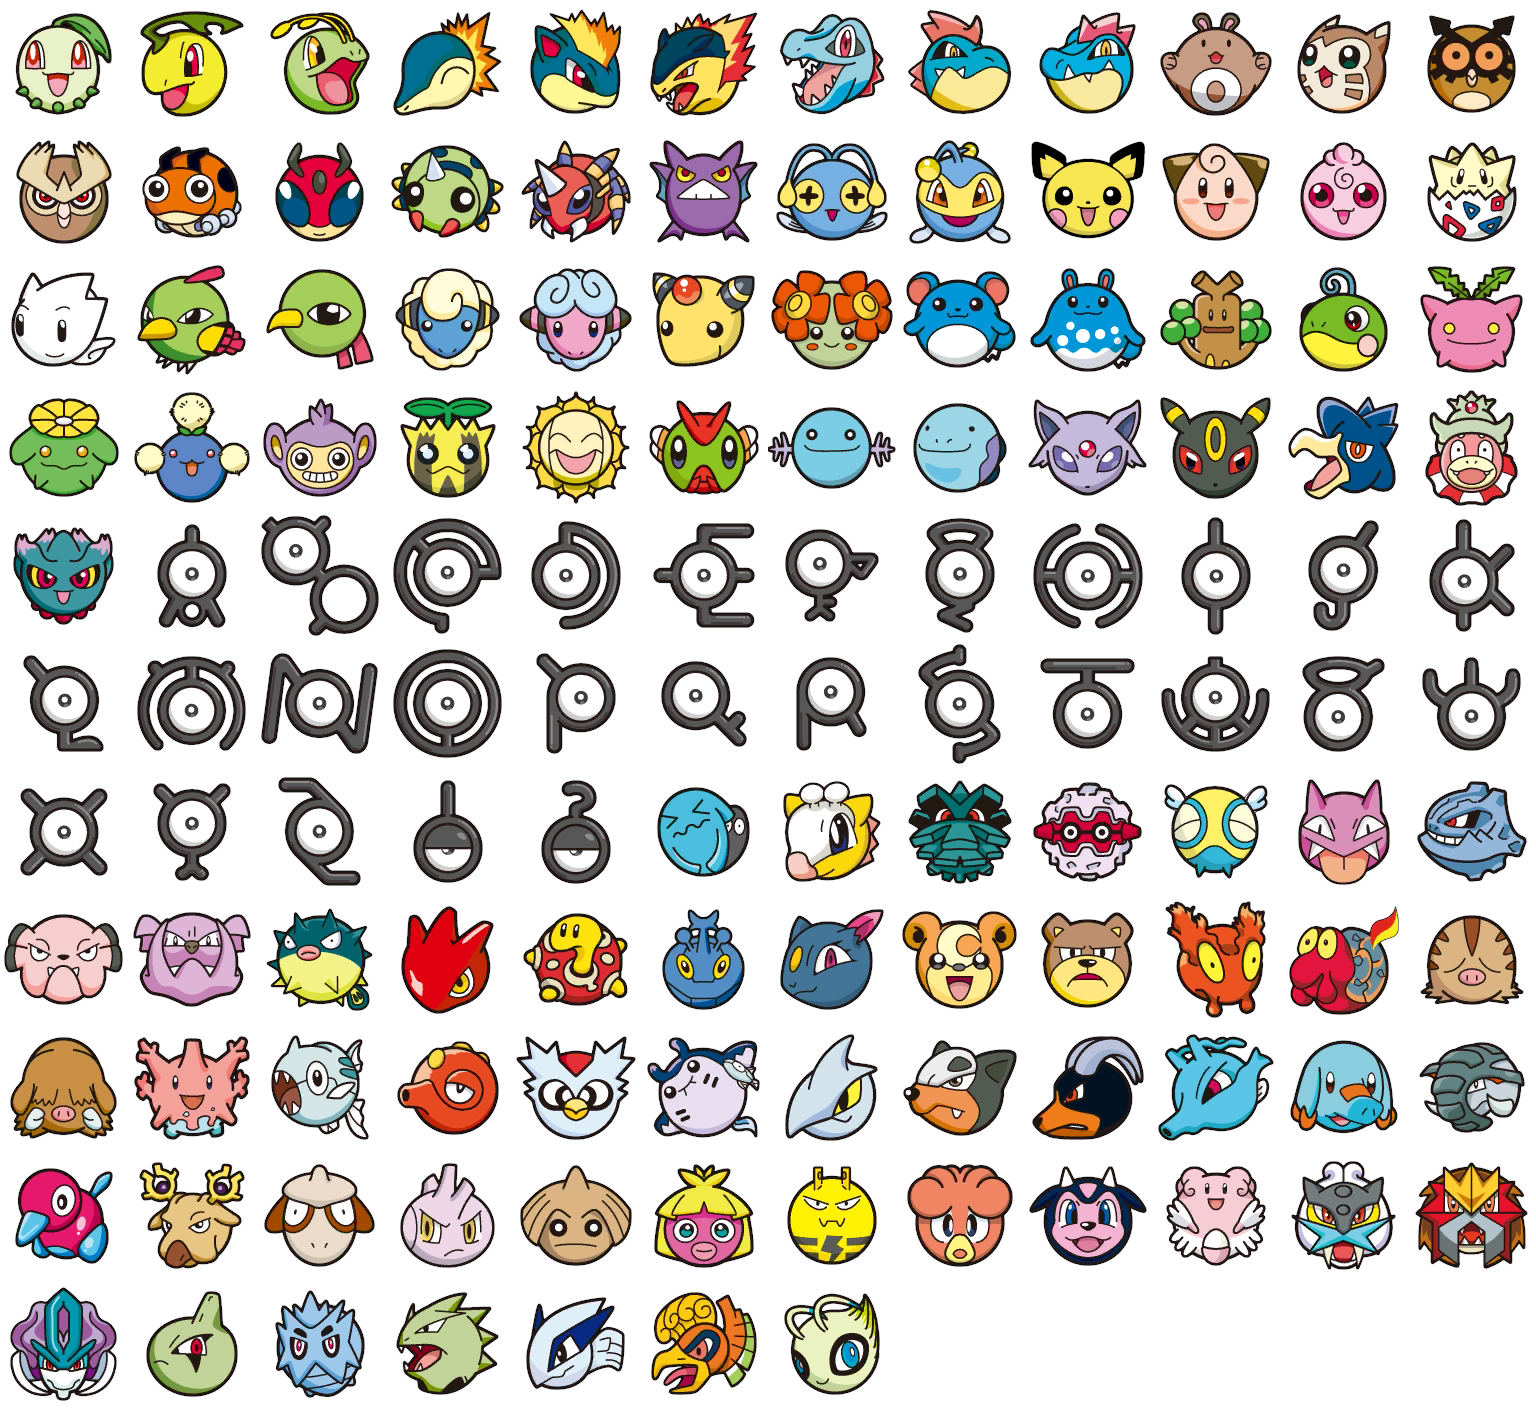 Pokémon Battle Trozei! / Pokémon Link: Battle! - Pokémon (2nd Generation)